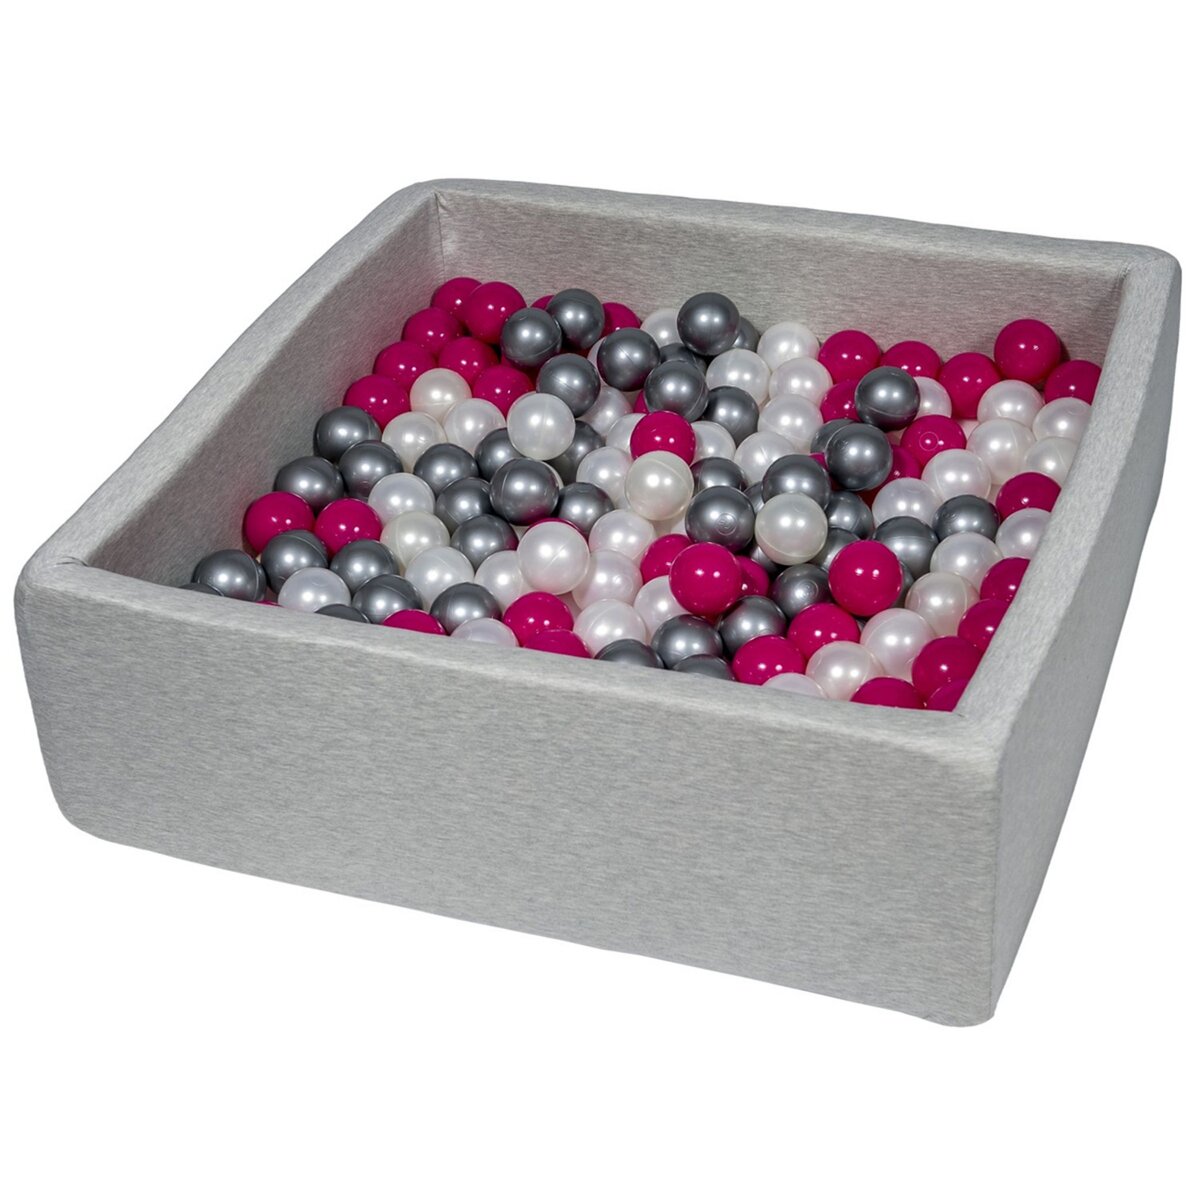  Piscine à balles pour enfant, 90x90 cm, Aire de jeu + 200 balles perle, rose, argent